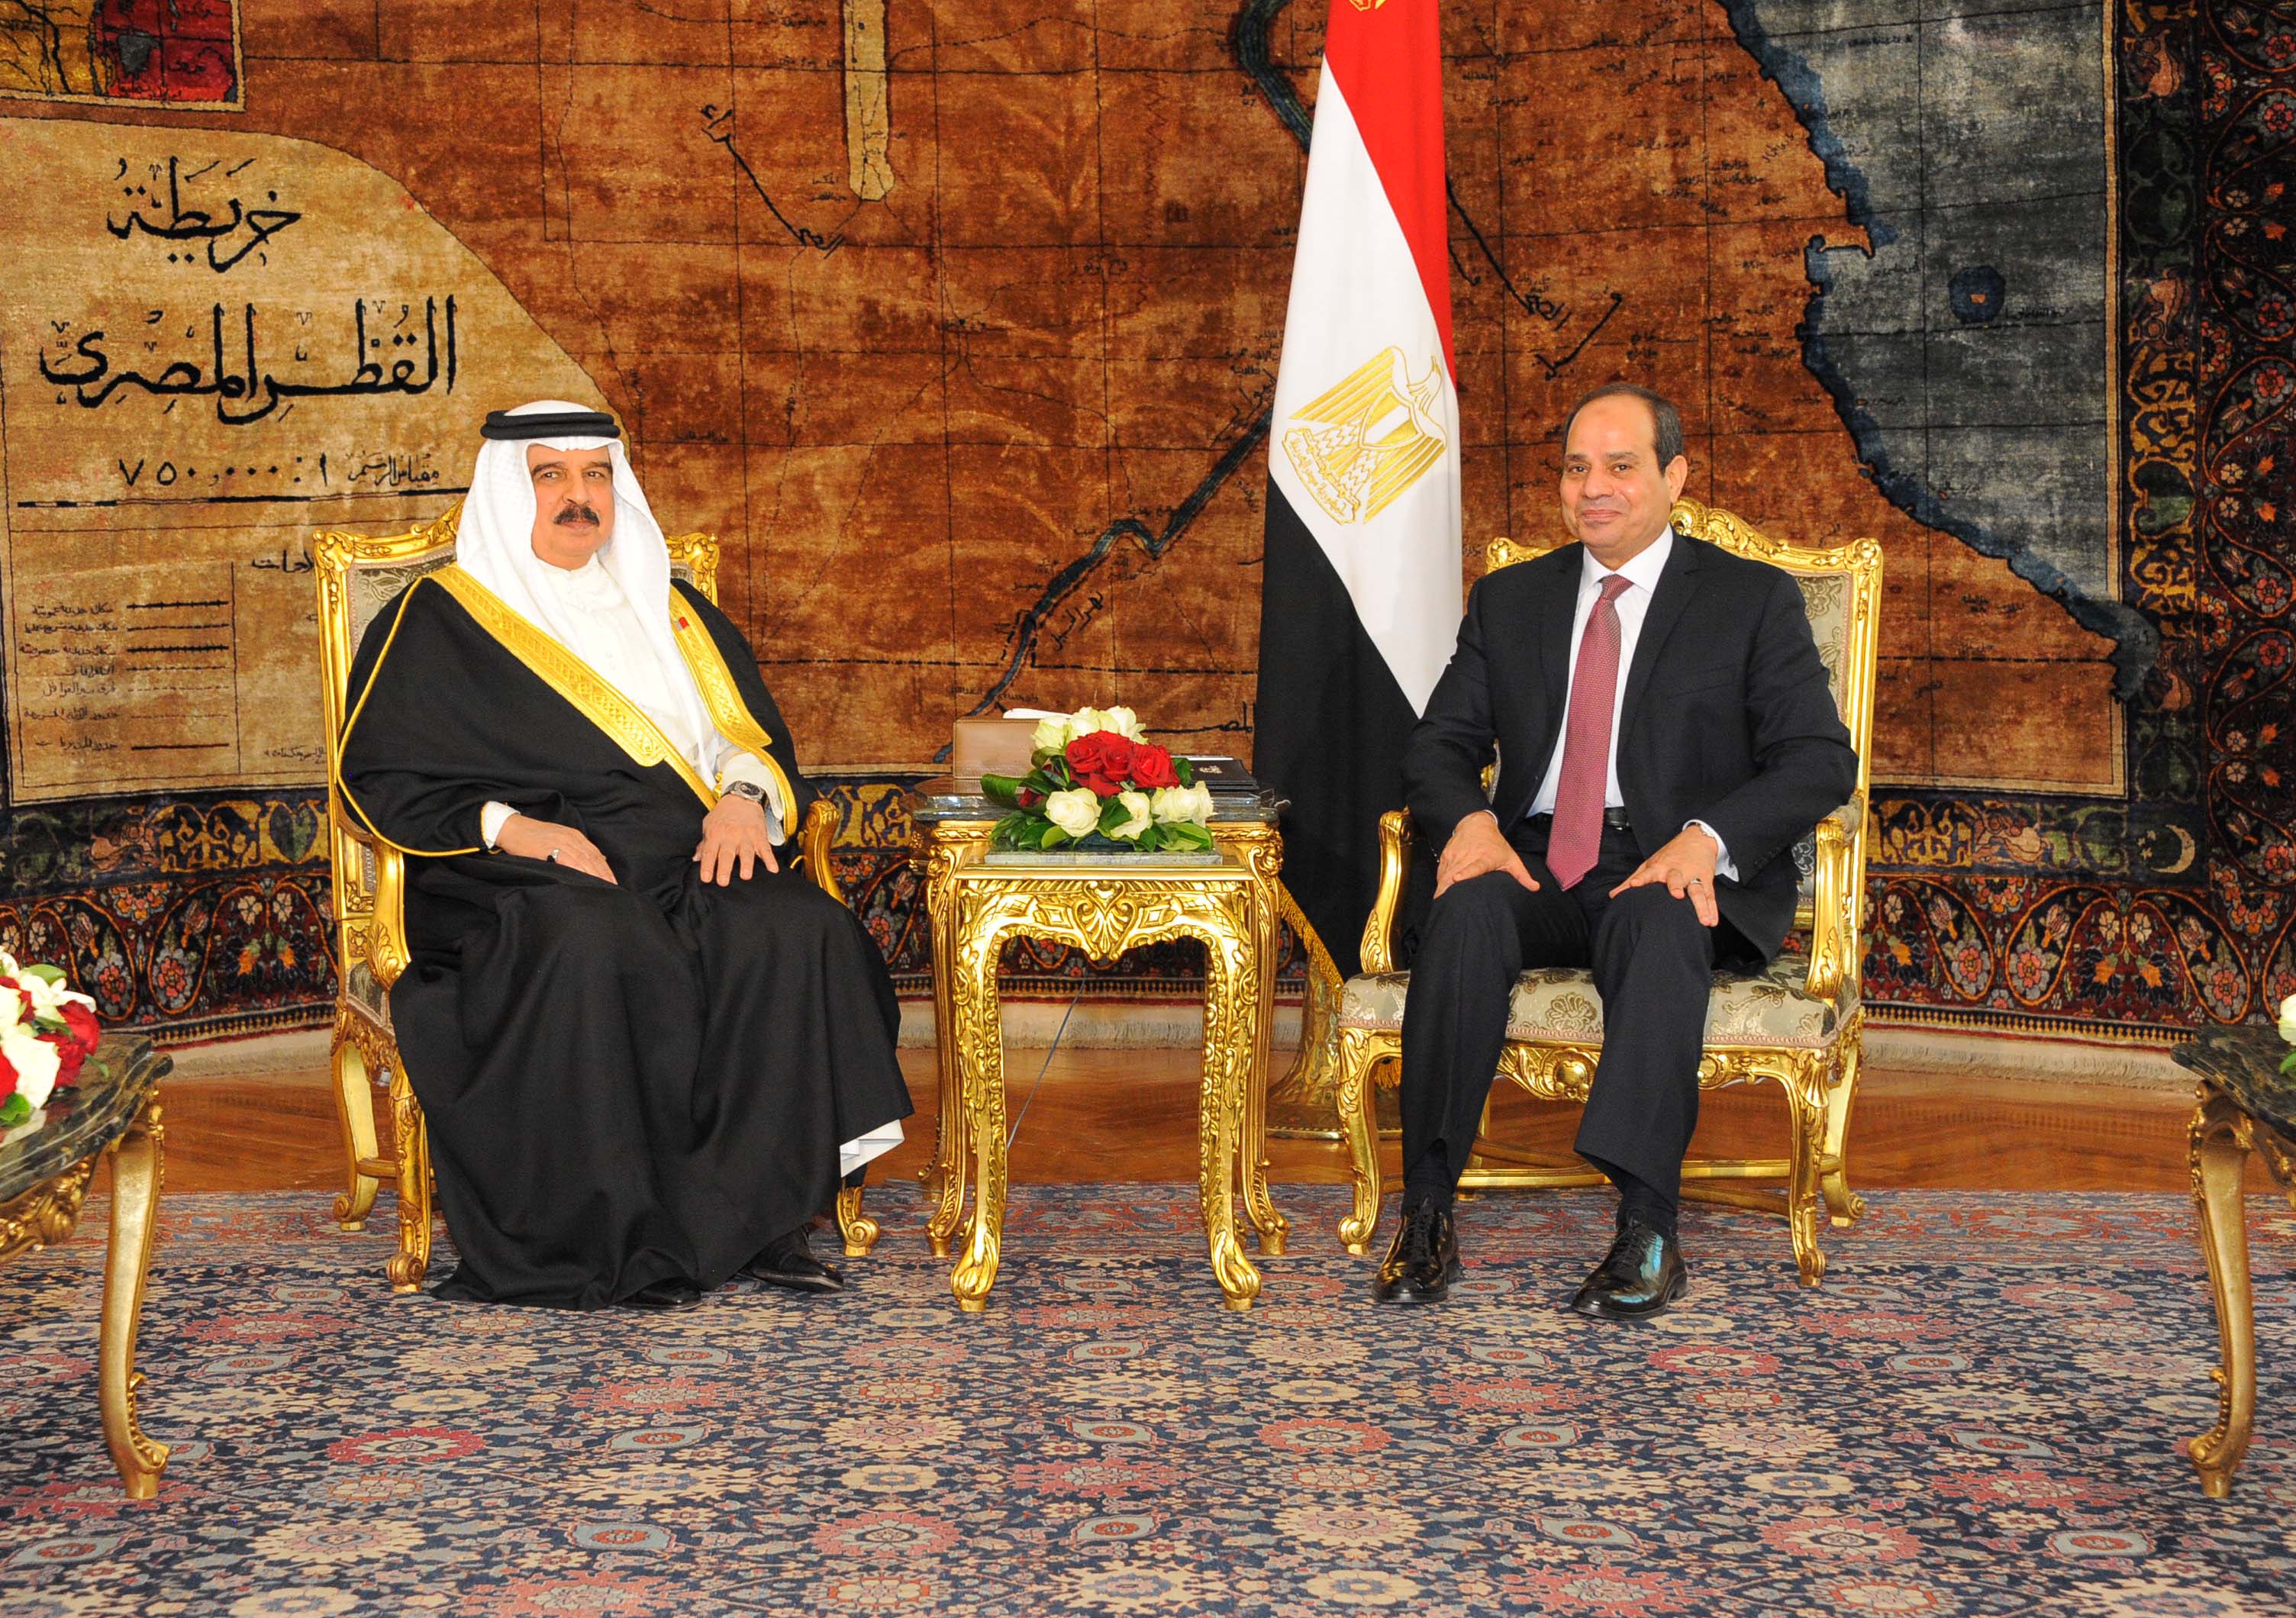 الرئيس المصري عبدالفتاح السيسي والعاهل البحريني الملك حمد بن عيسى آل خليفة أثناء جلسة المباحثات